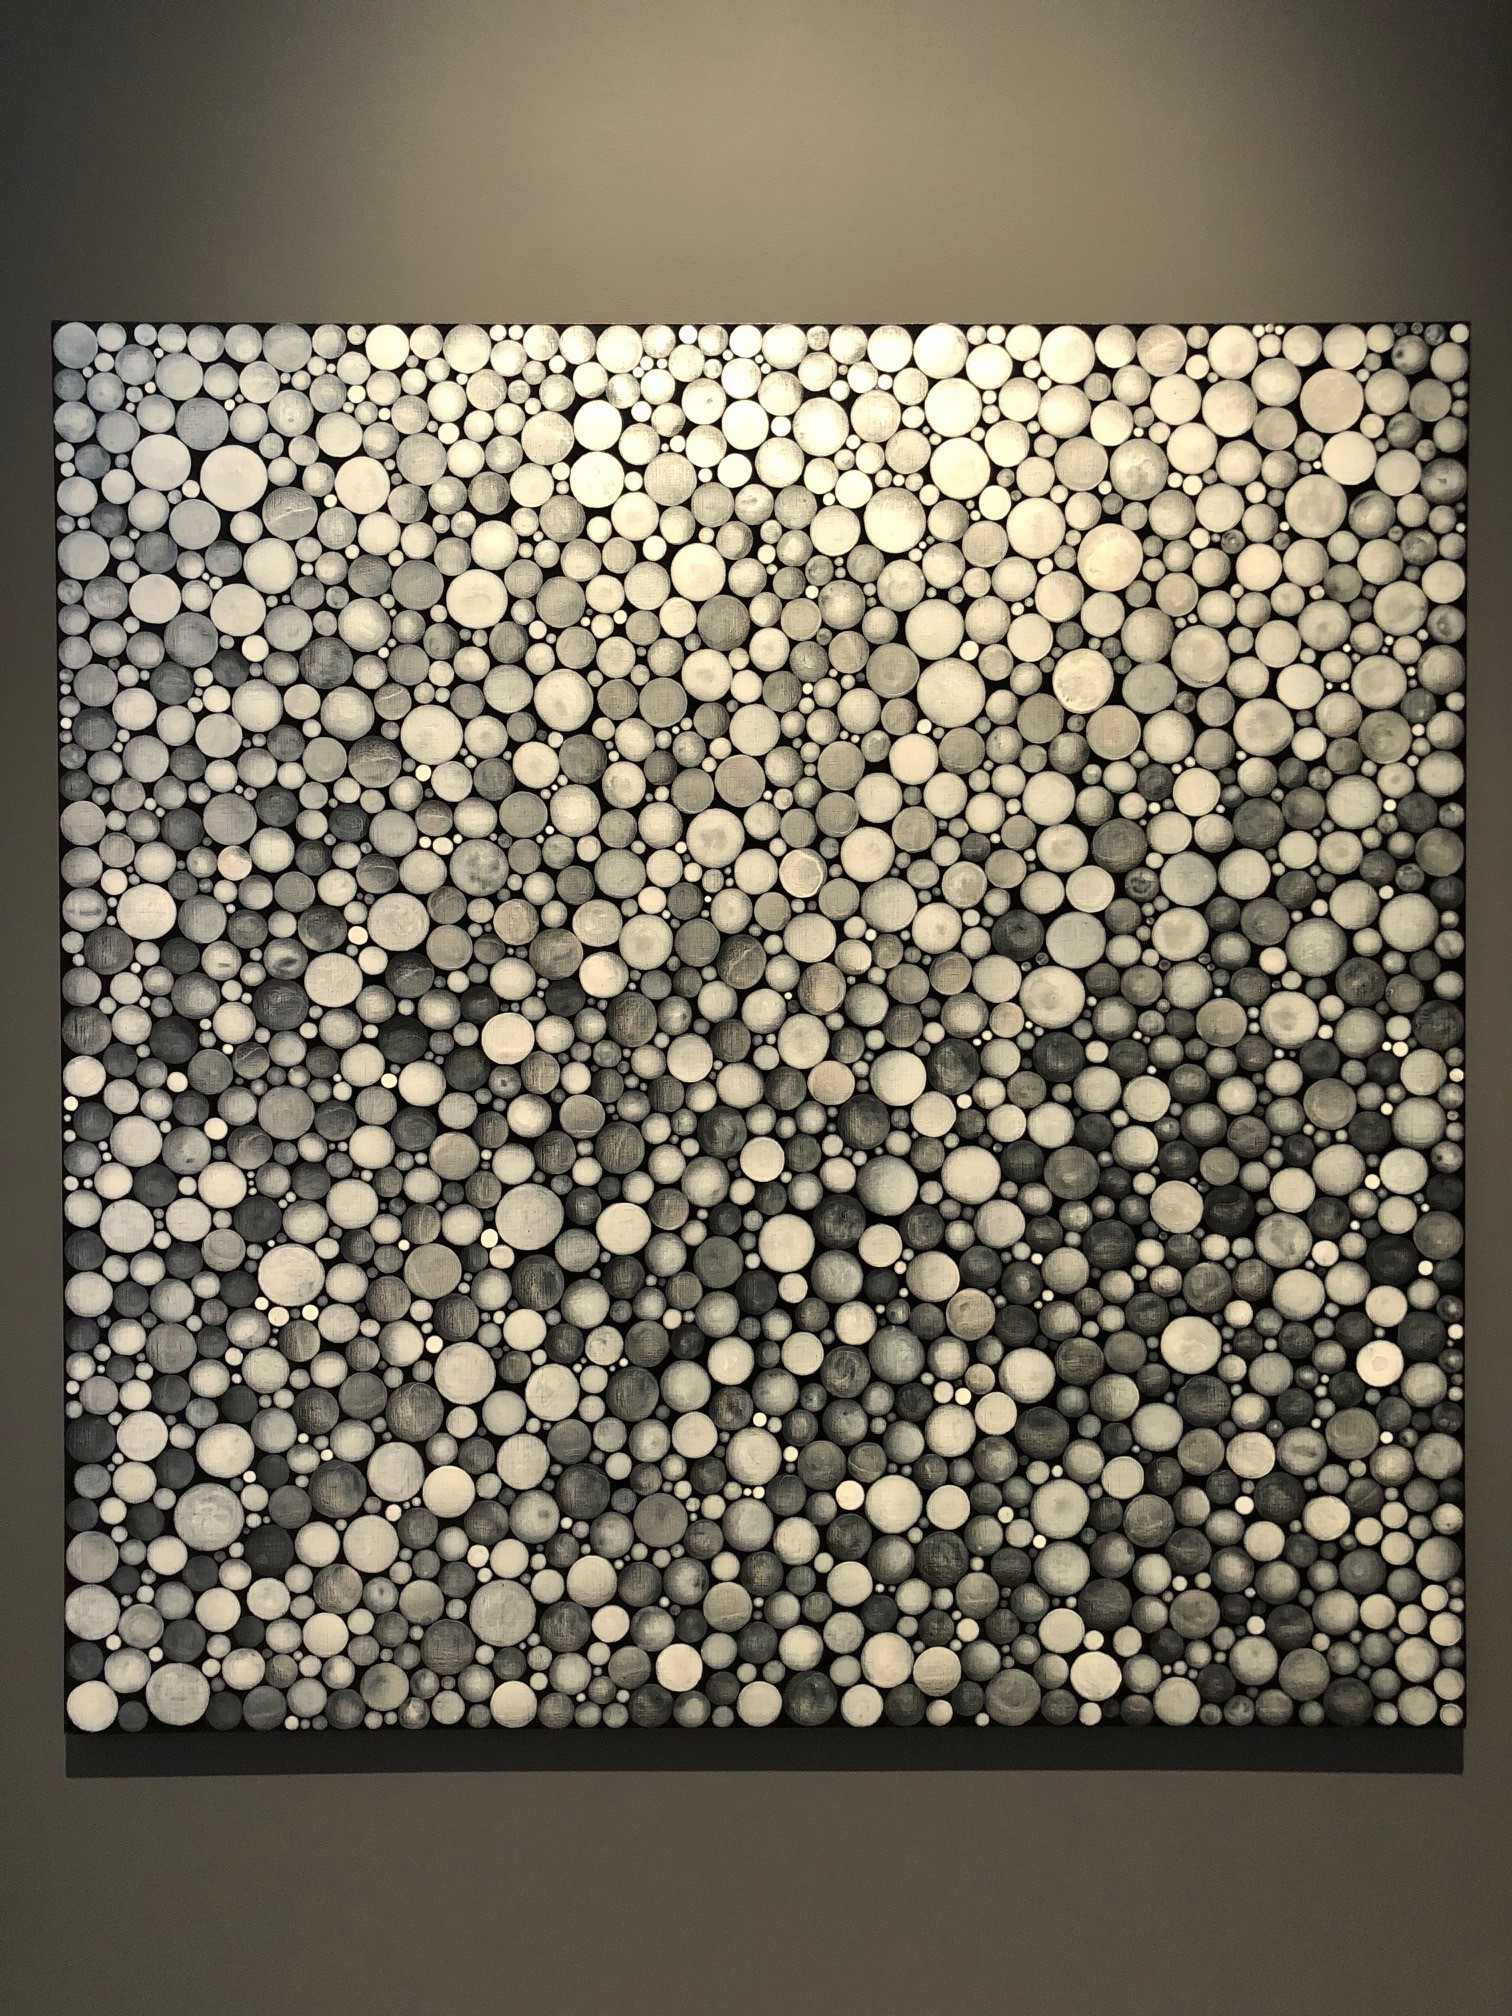 A photo of the Yayoi Kusama painting, "Dots Obsession XZQBA."